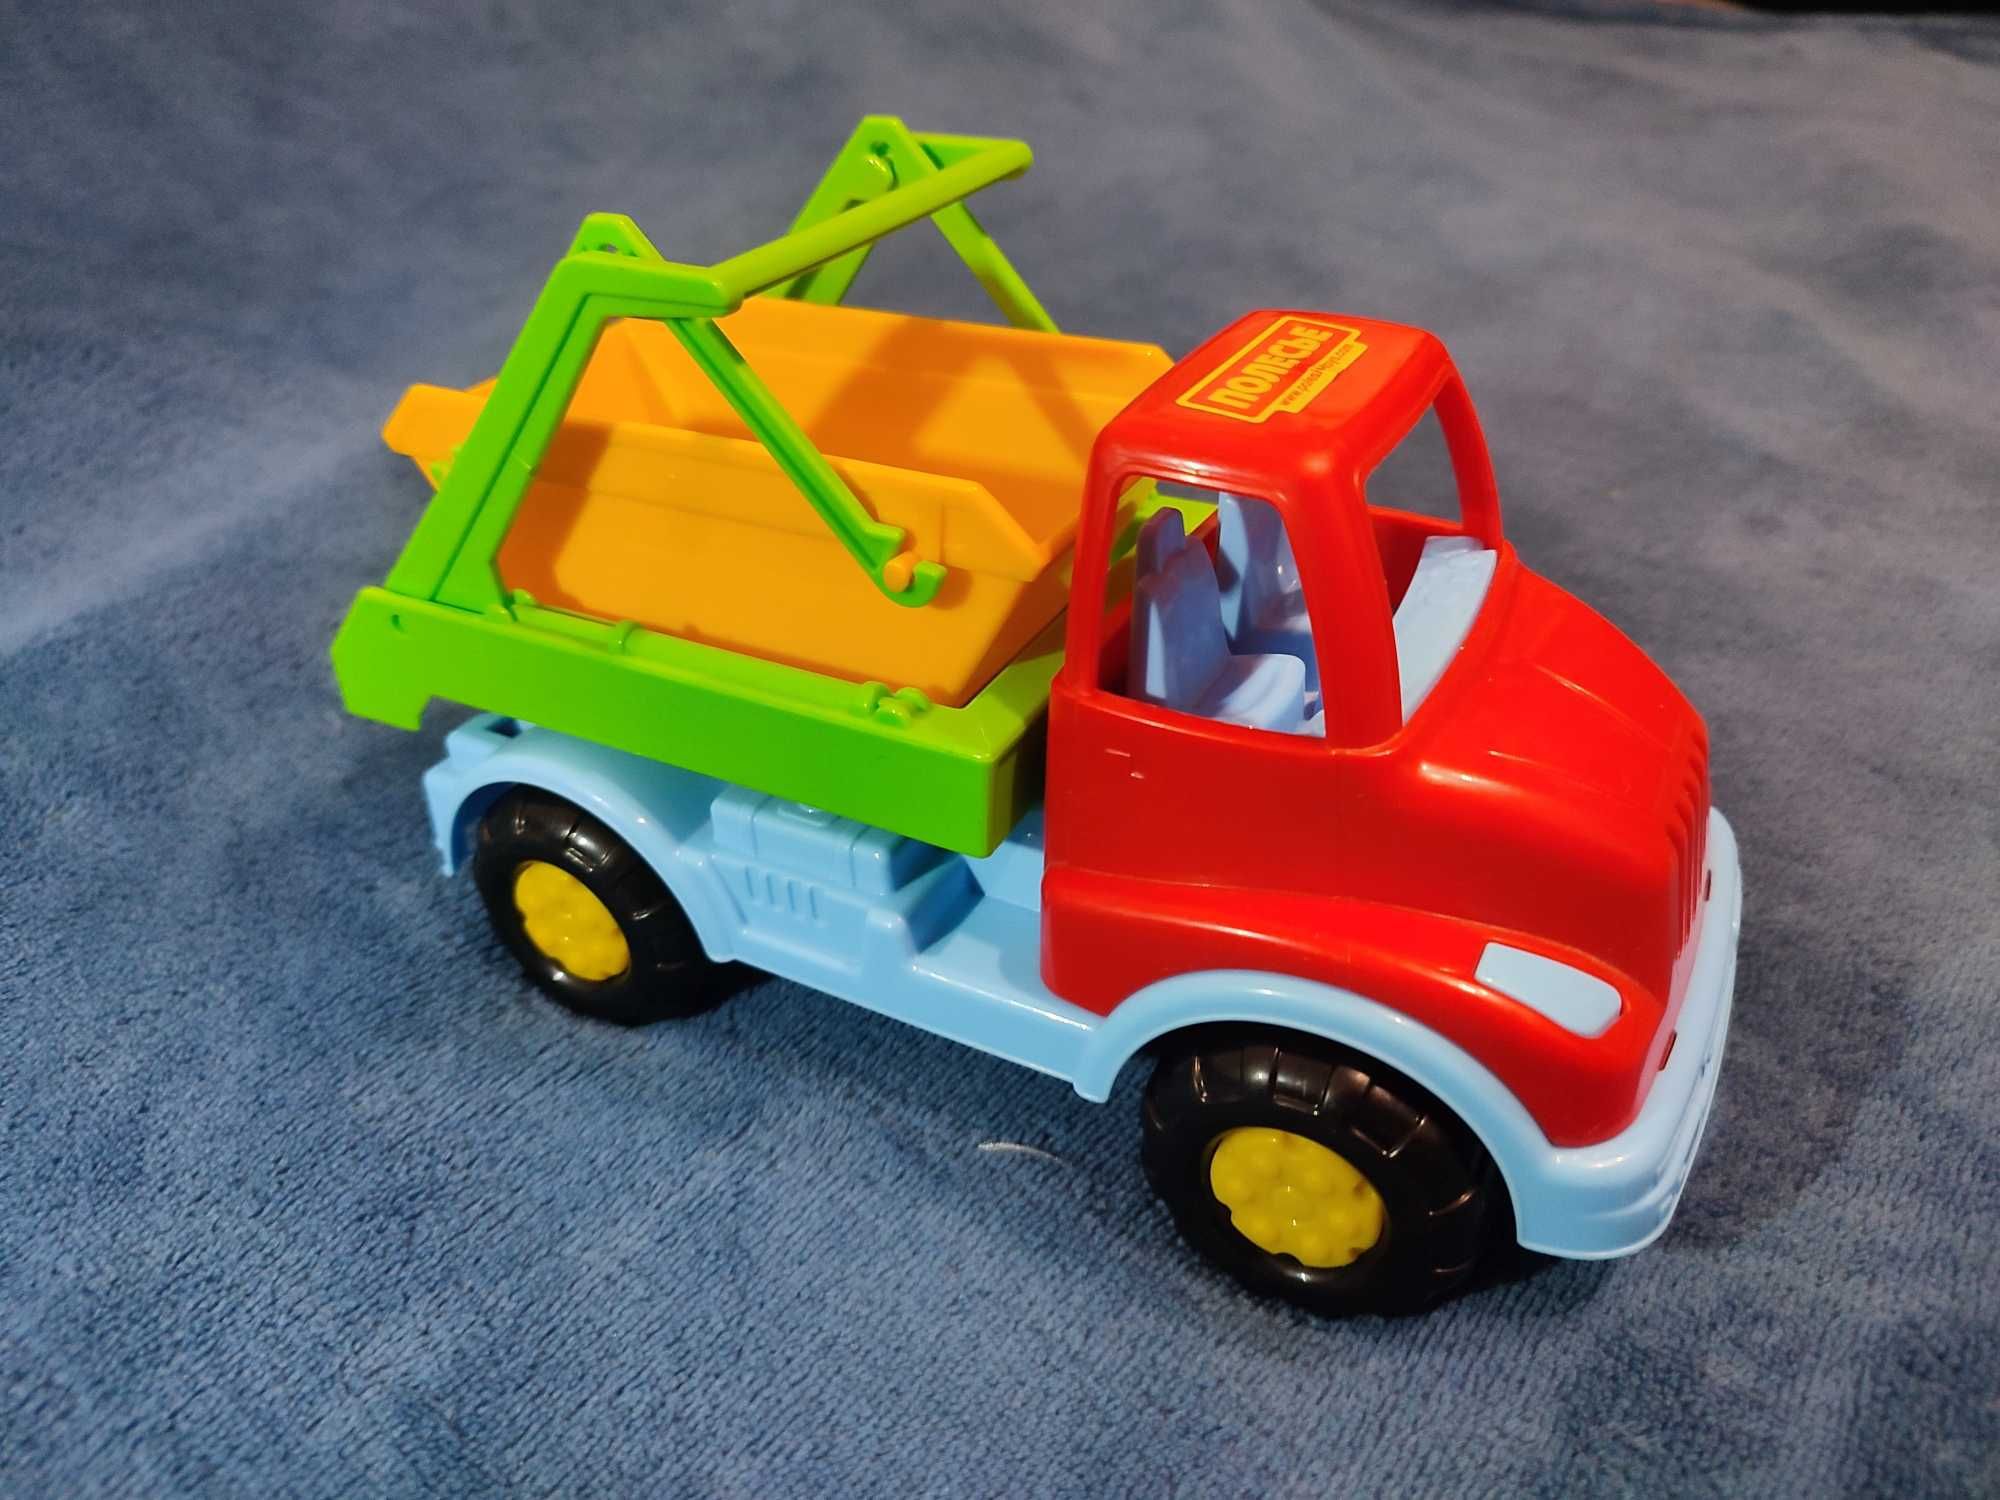 Пакет фирменных вещей на мальчика 2-4 года (12 вещей + игрушка)